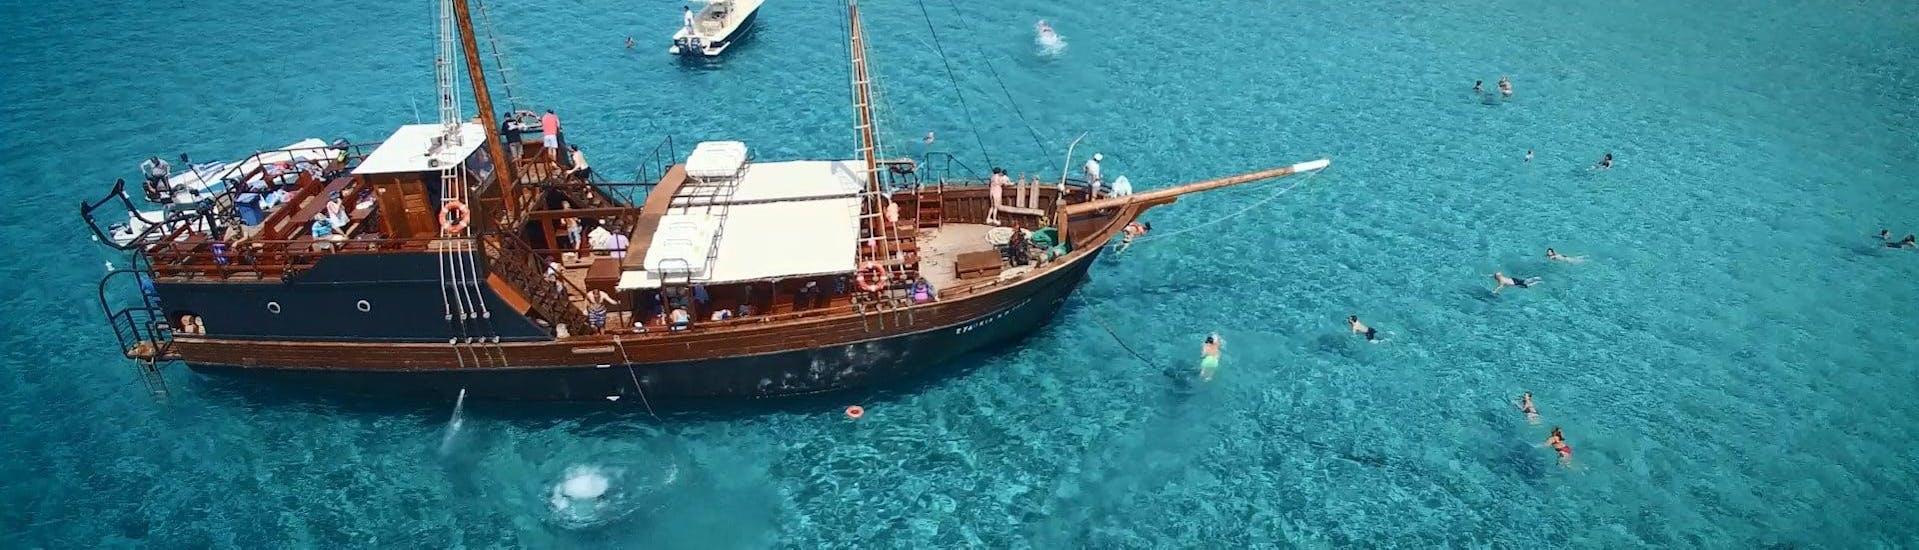 Immagine della barca pirtae utilizzata per le escursioni in barca di Cretan Daily Cruises - Chrissi Islands.